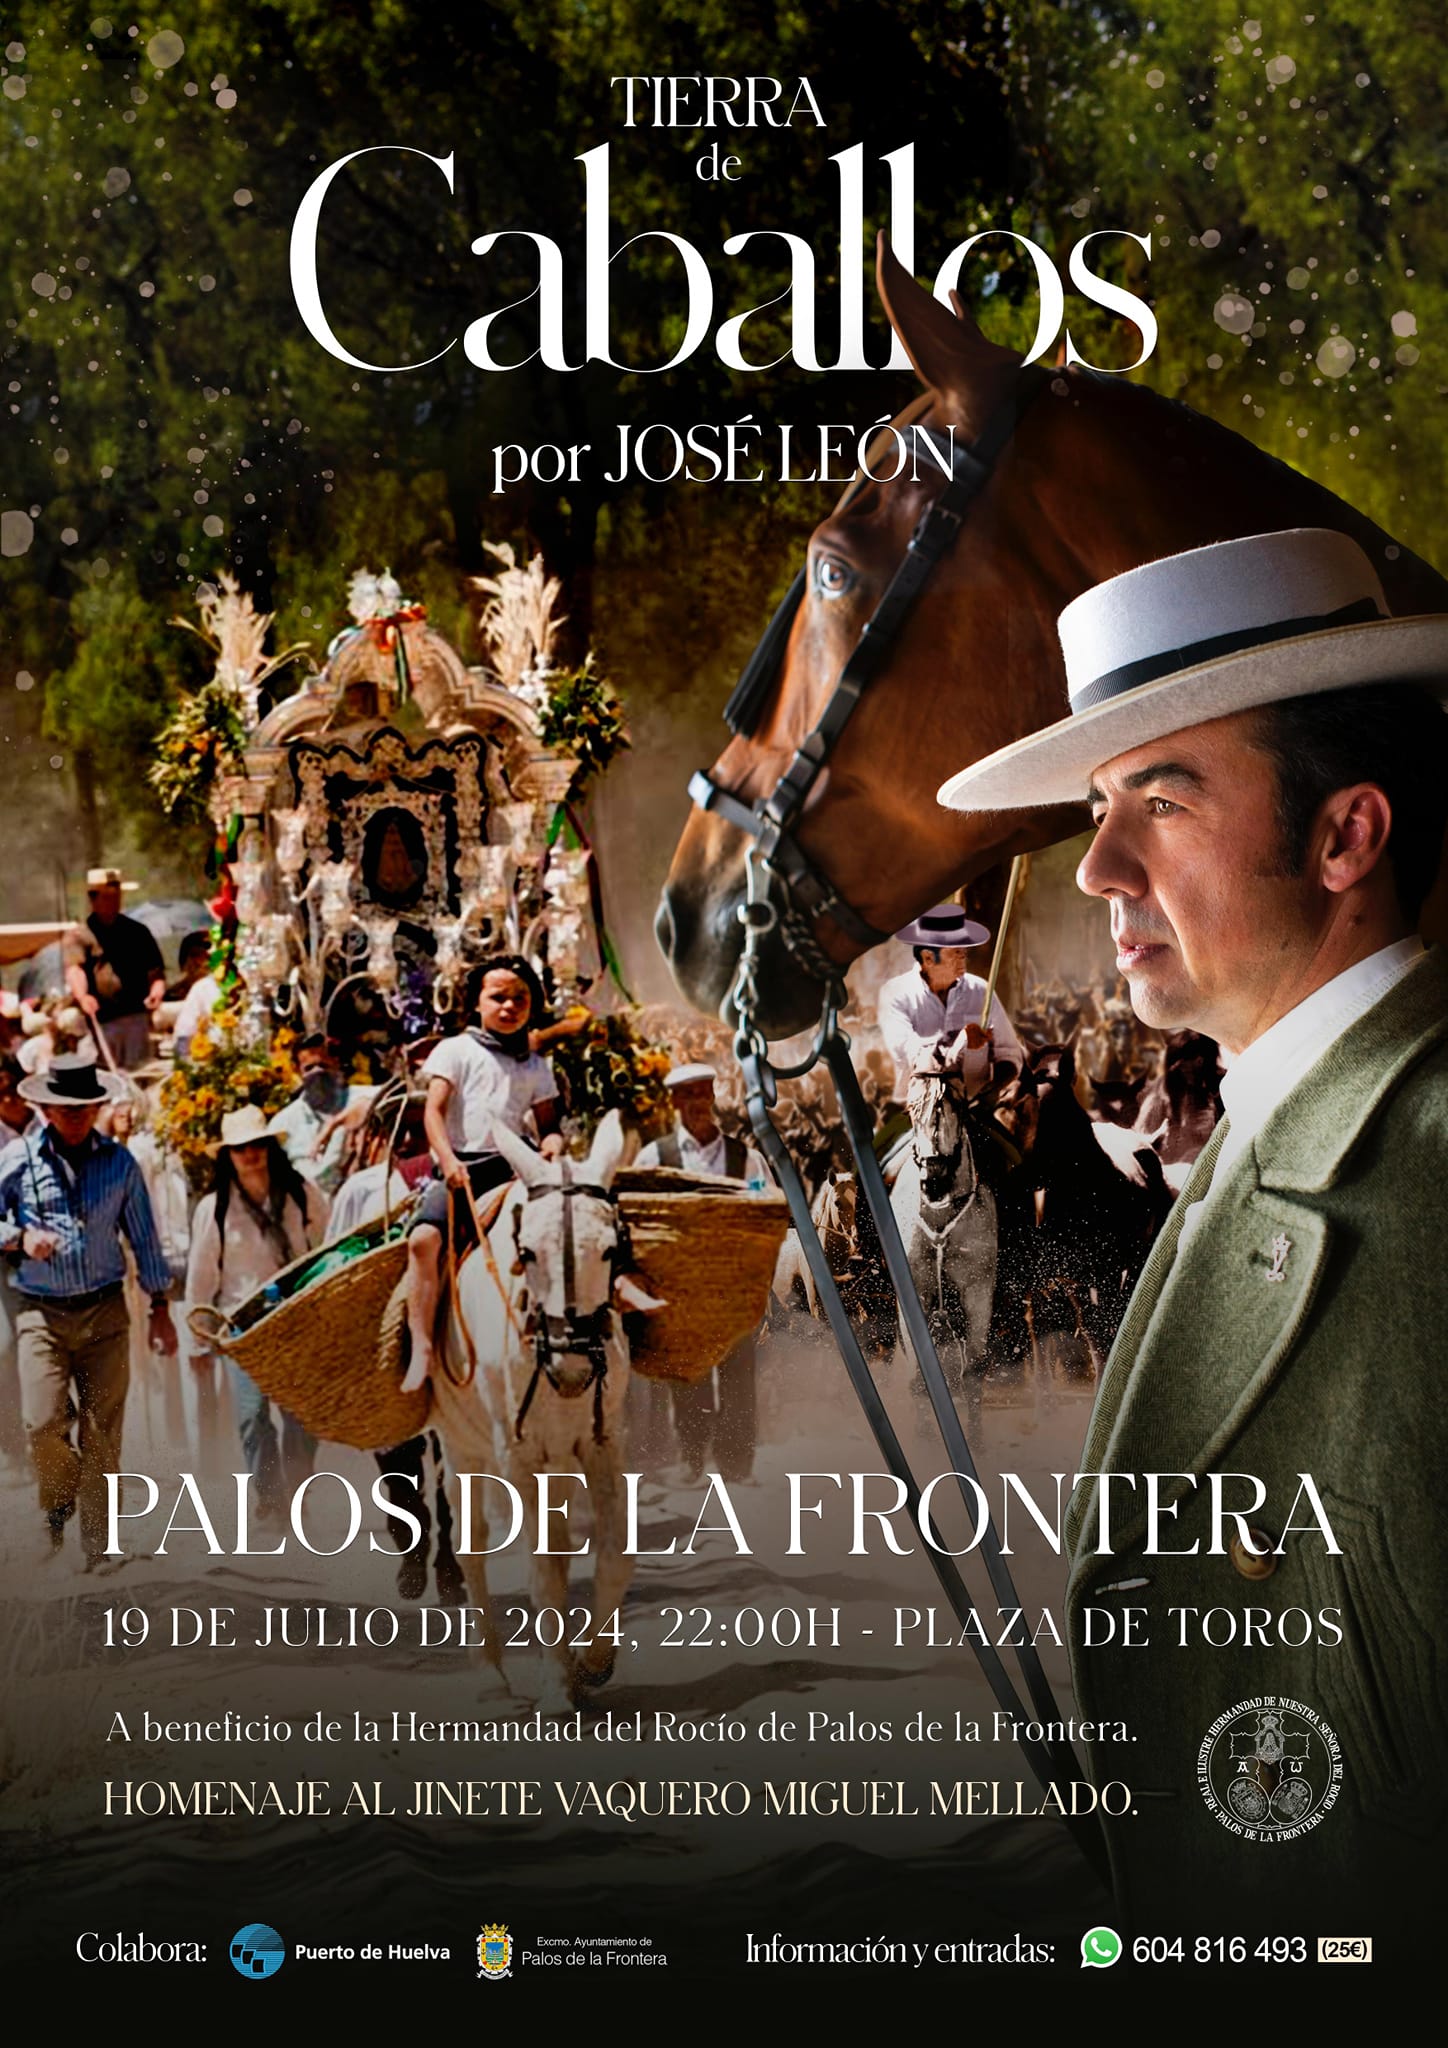 Palos acogerá el espectáculo musical y ecuestre ‘Tierra de Caballos’ del compositor y poeta José León